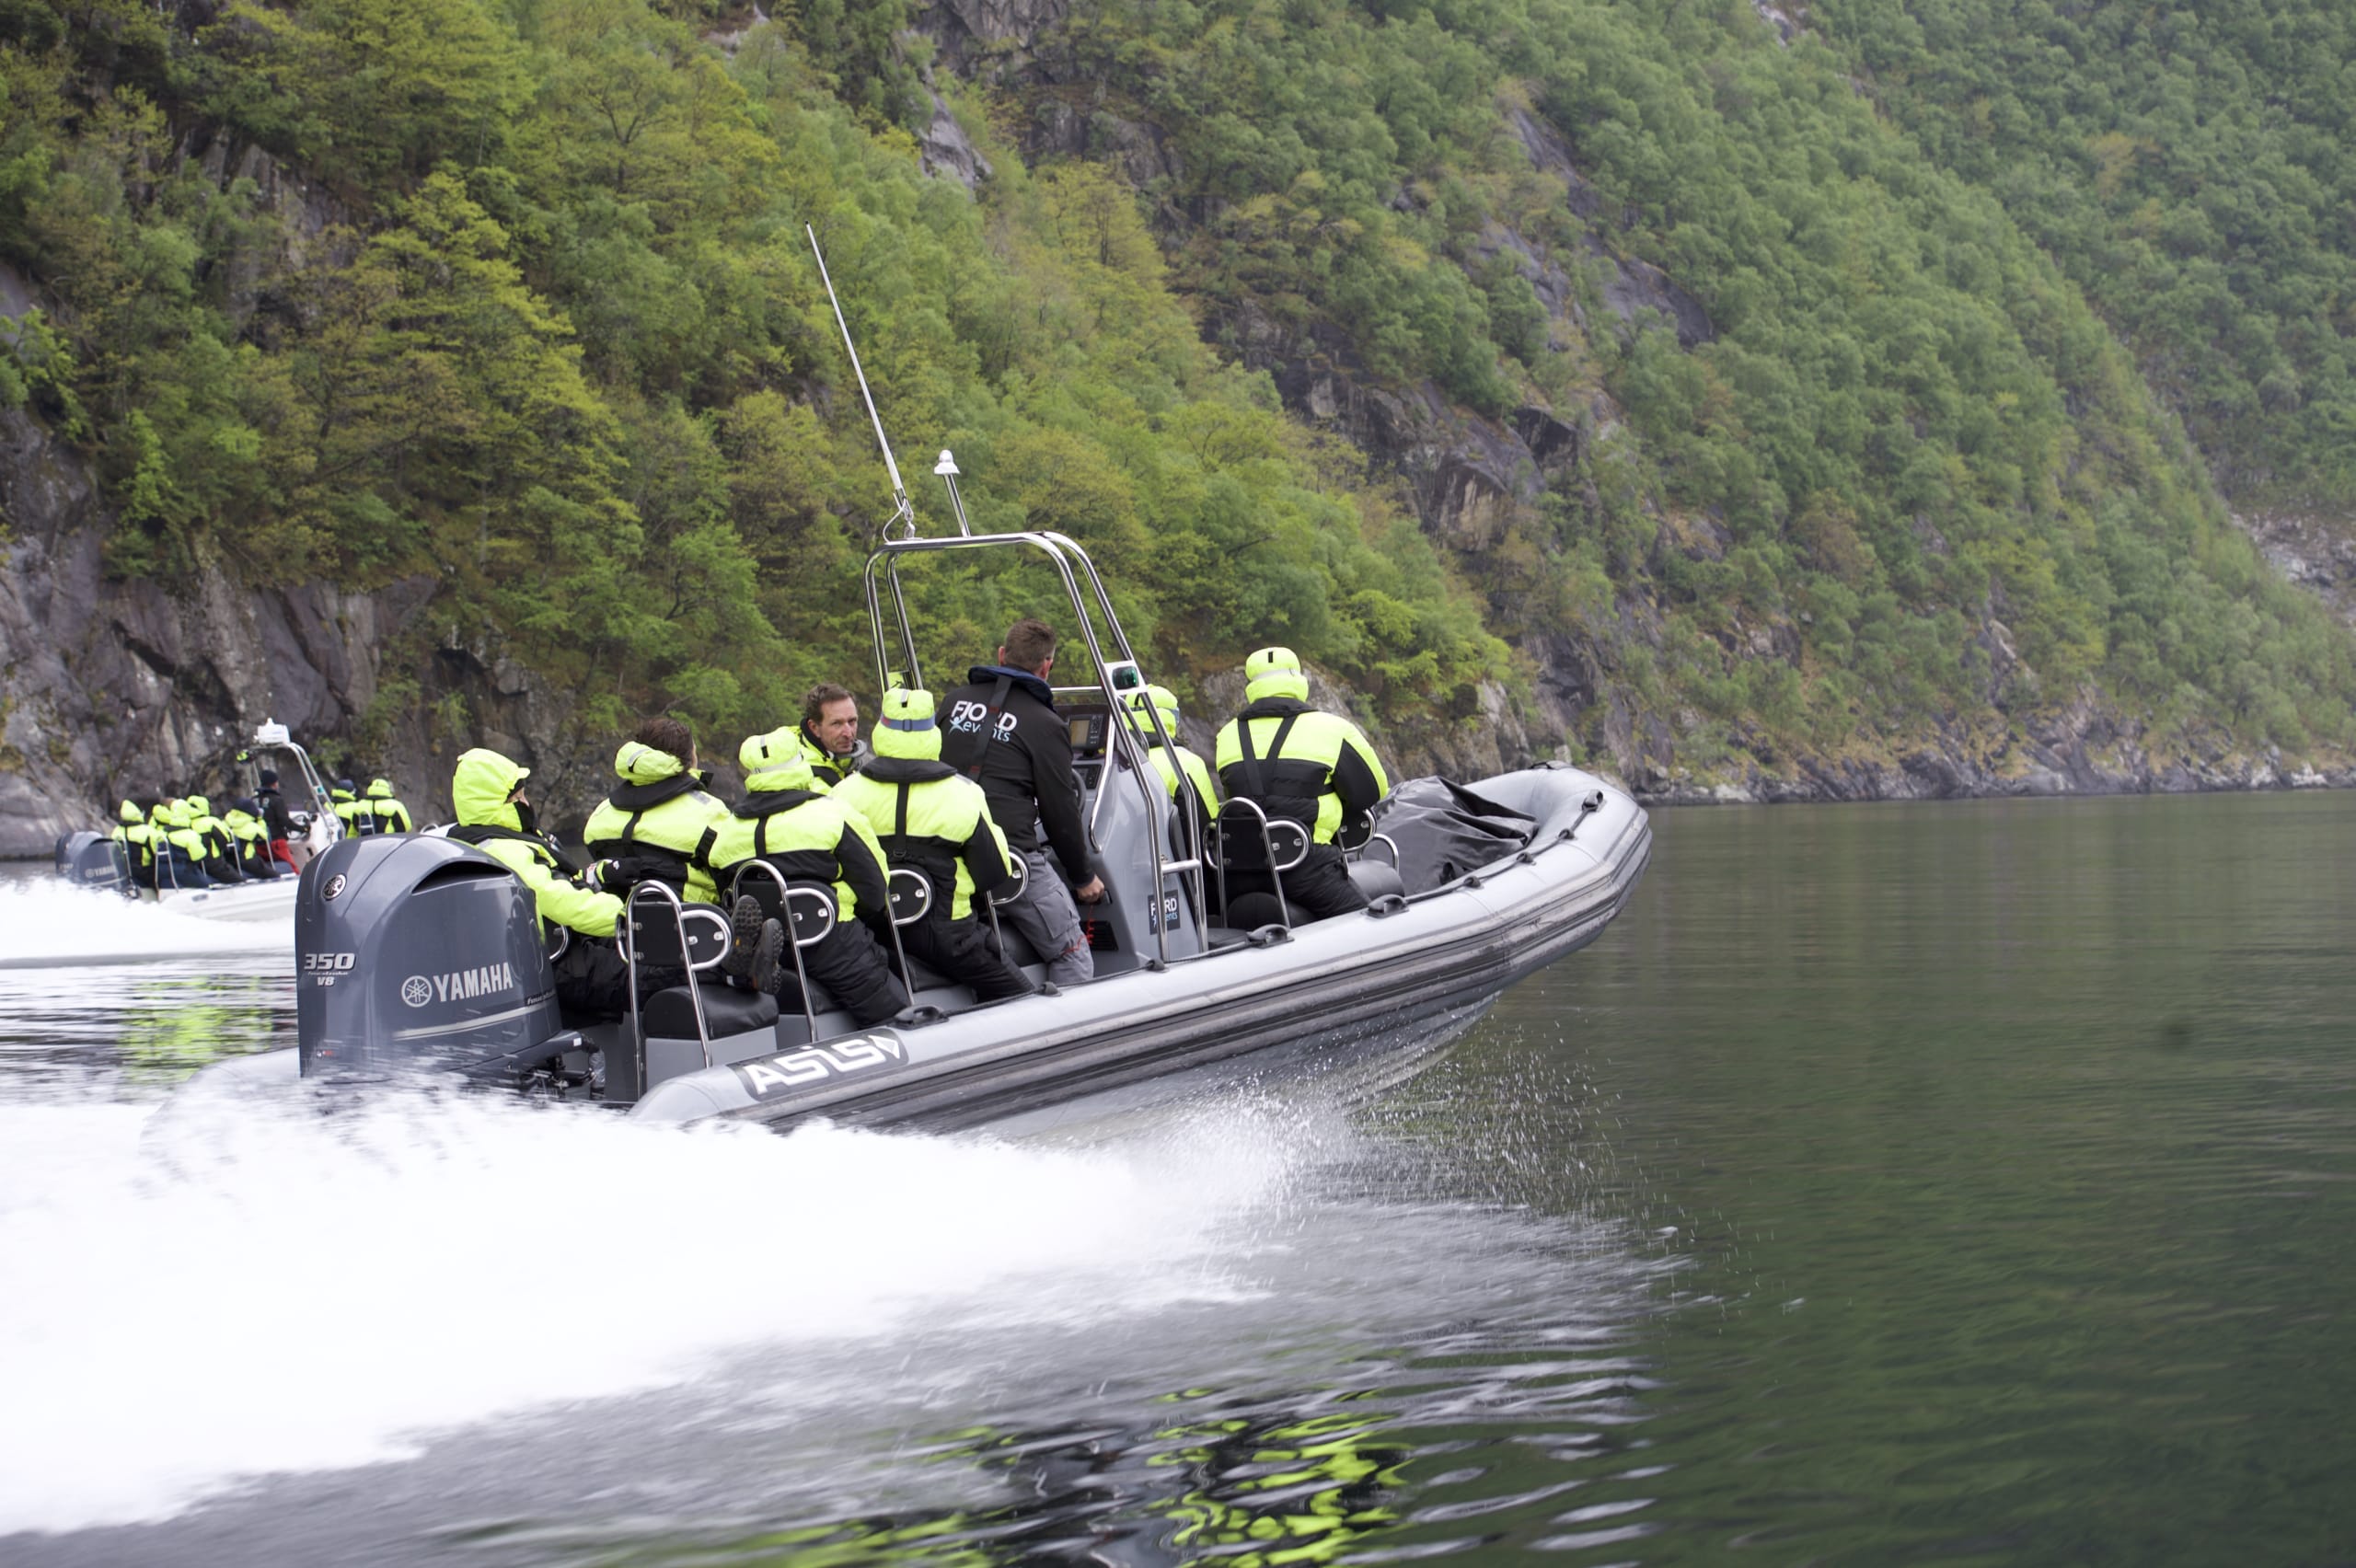 lysefjord boat trips from stavanger